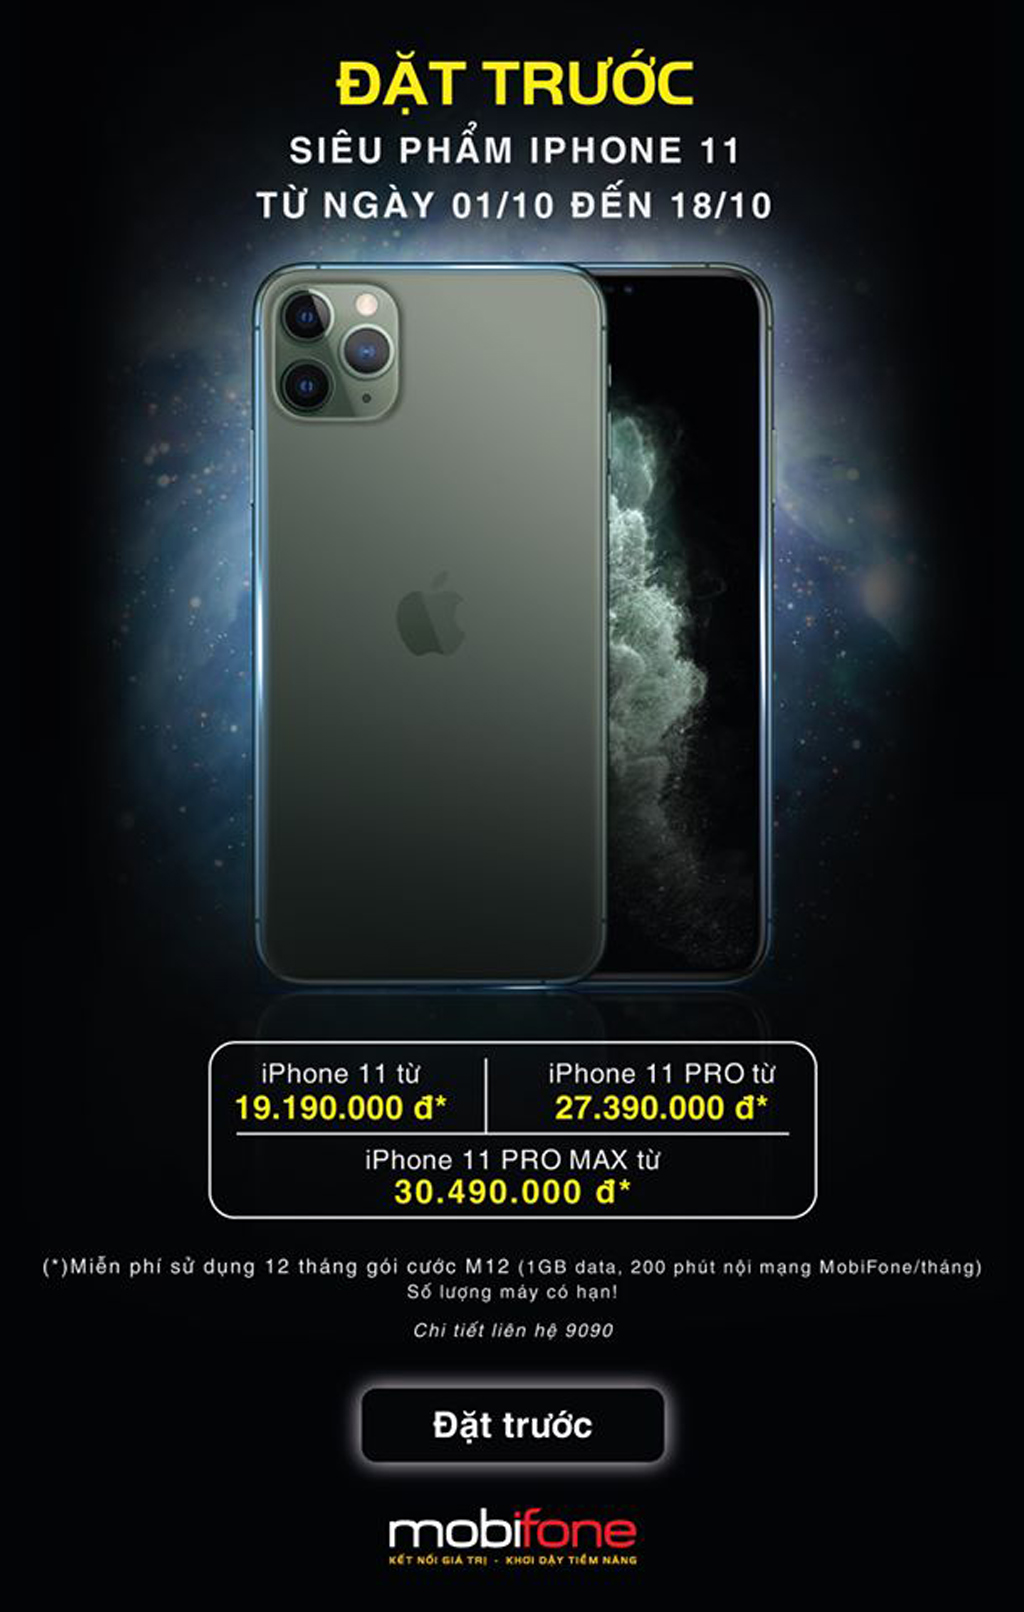 Mức giá iPhone ưu đãi rẻ hơn 2,5 - 3,5 triệu đồng so với thị trường khi mua kèm combo các gói cước của MobiFone